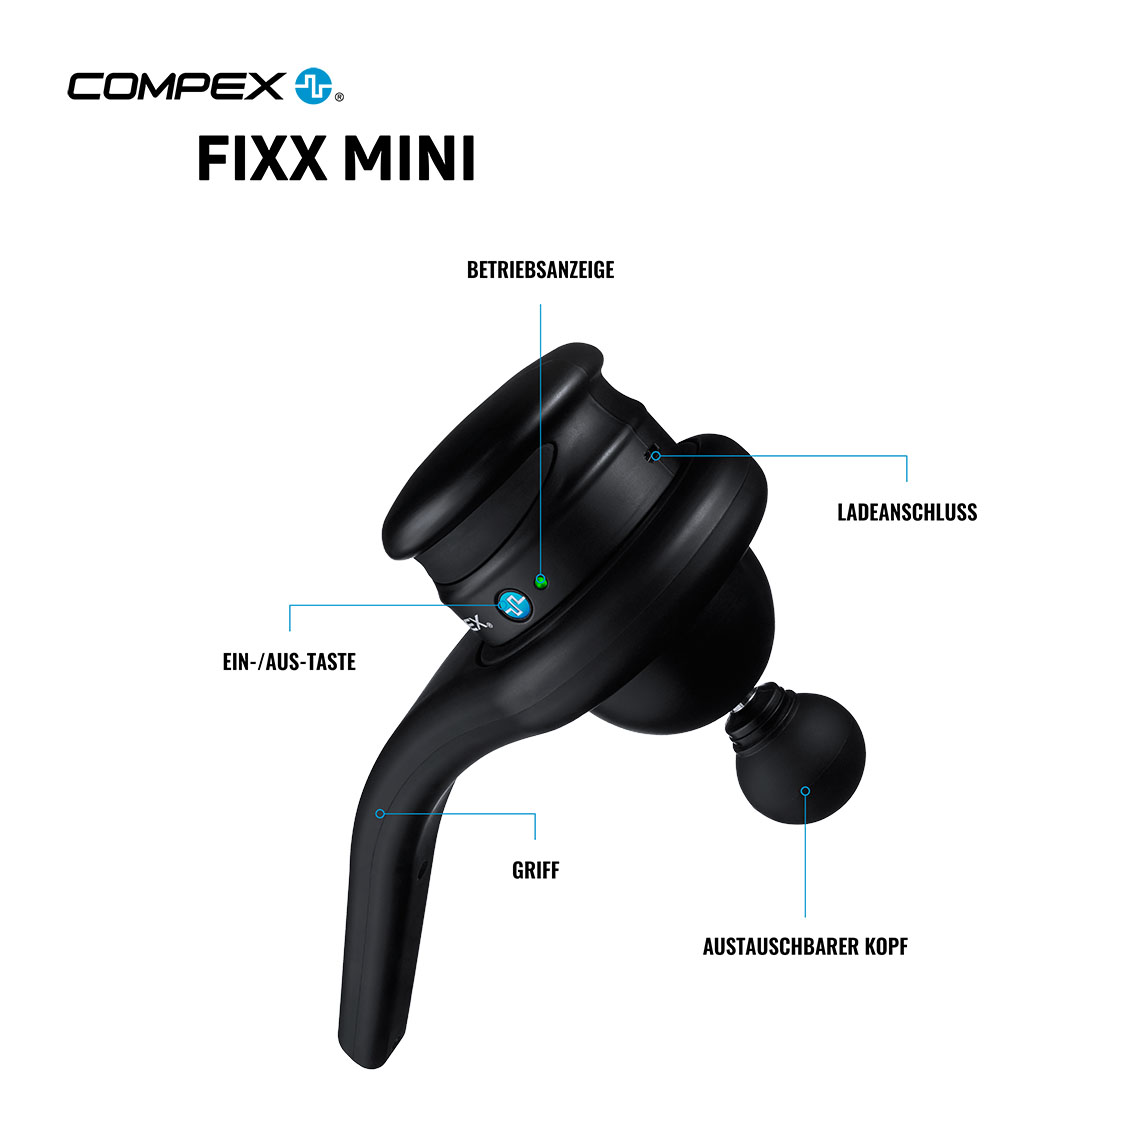 Compex Fixx Mini Infografic